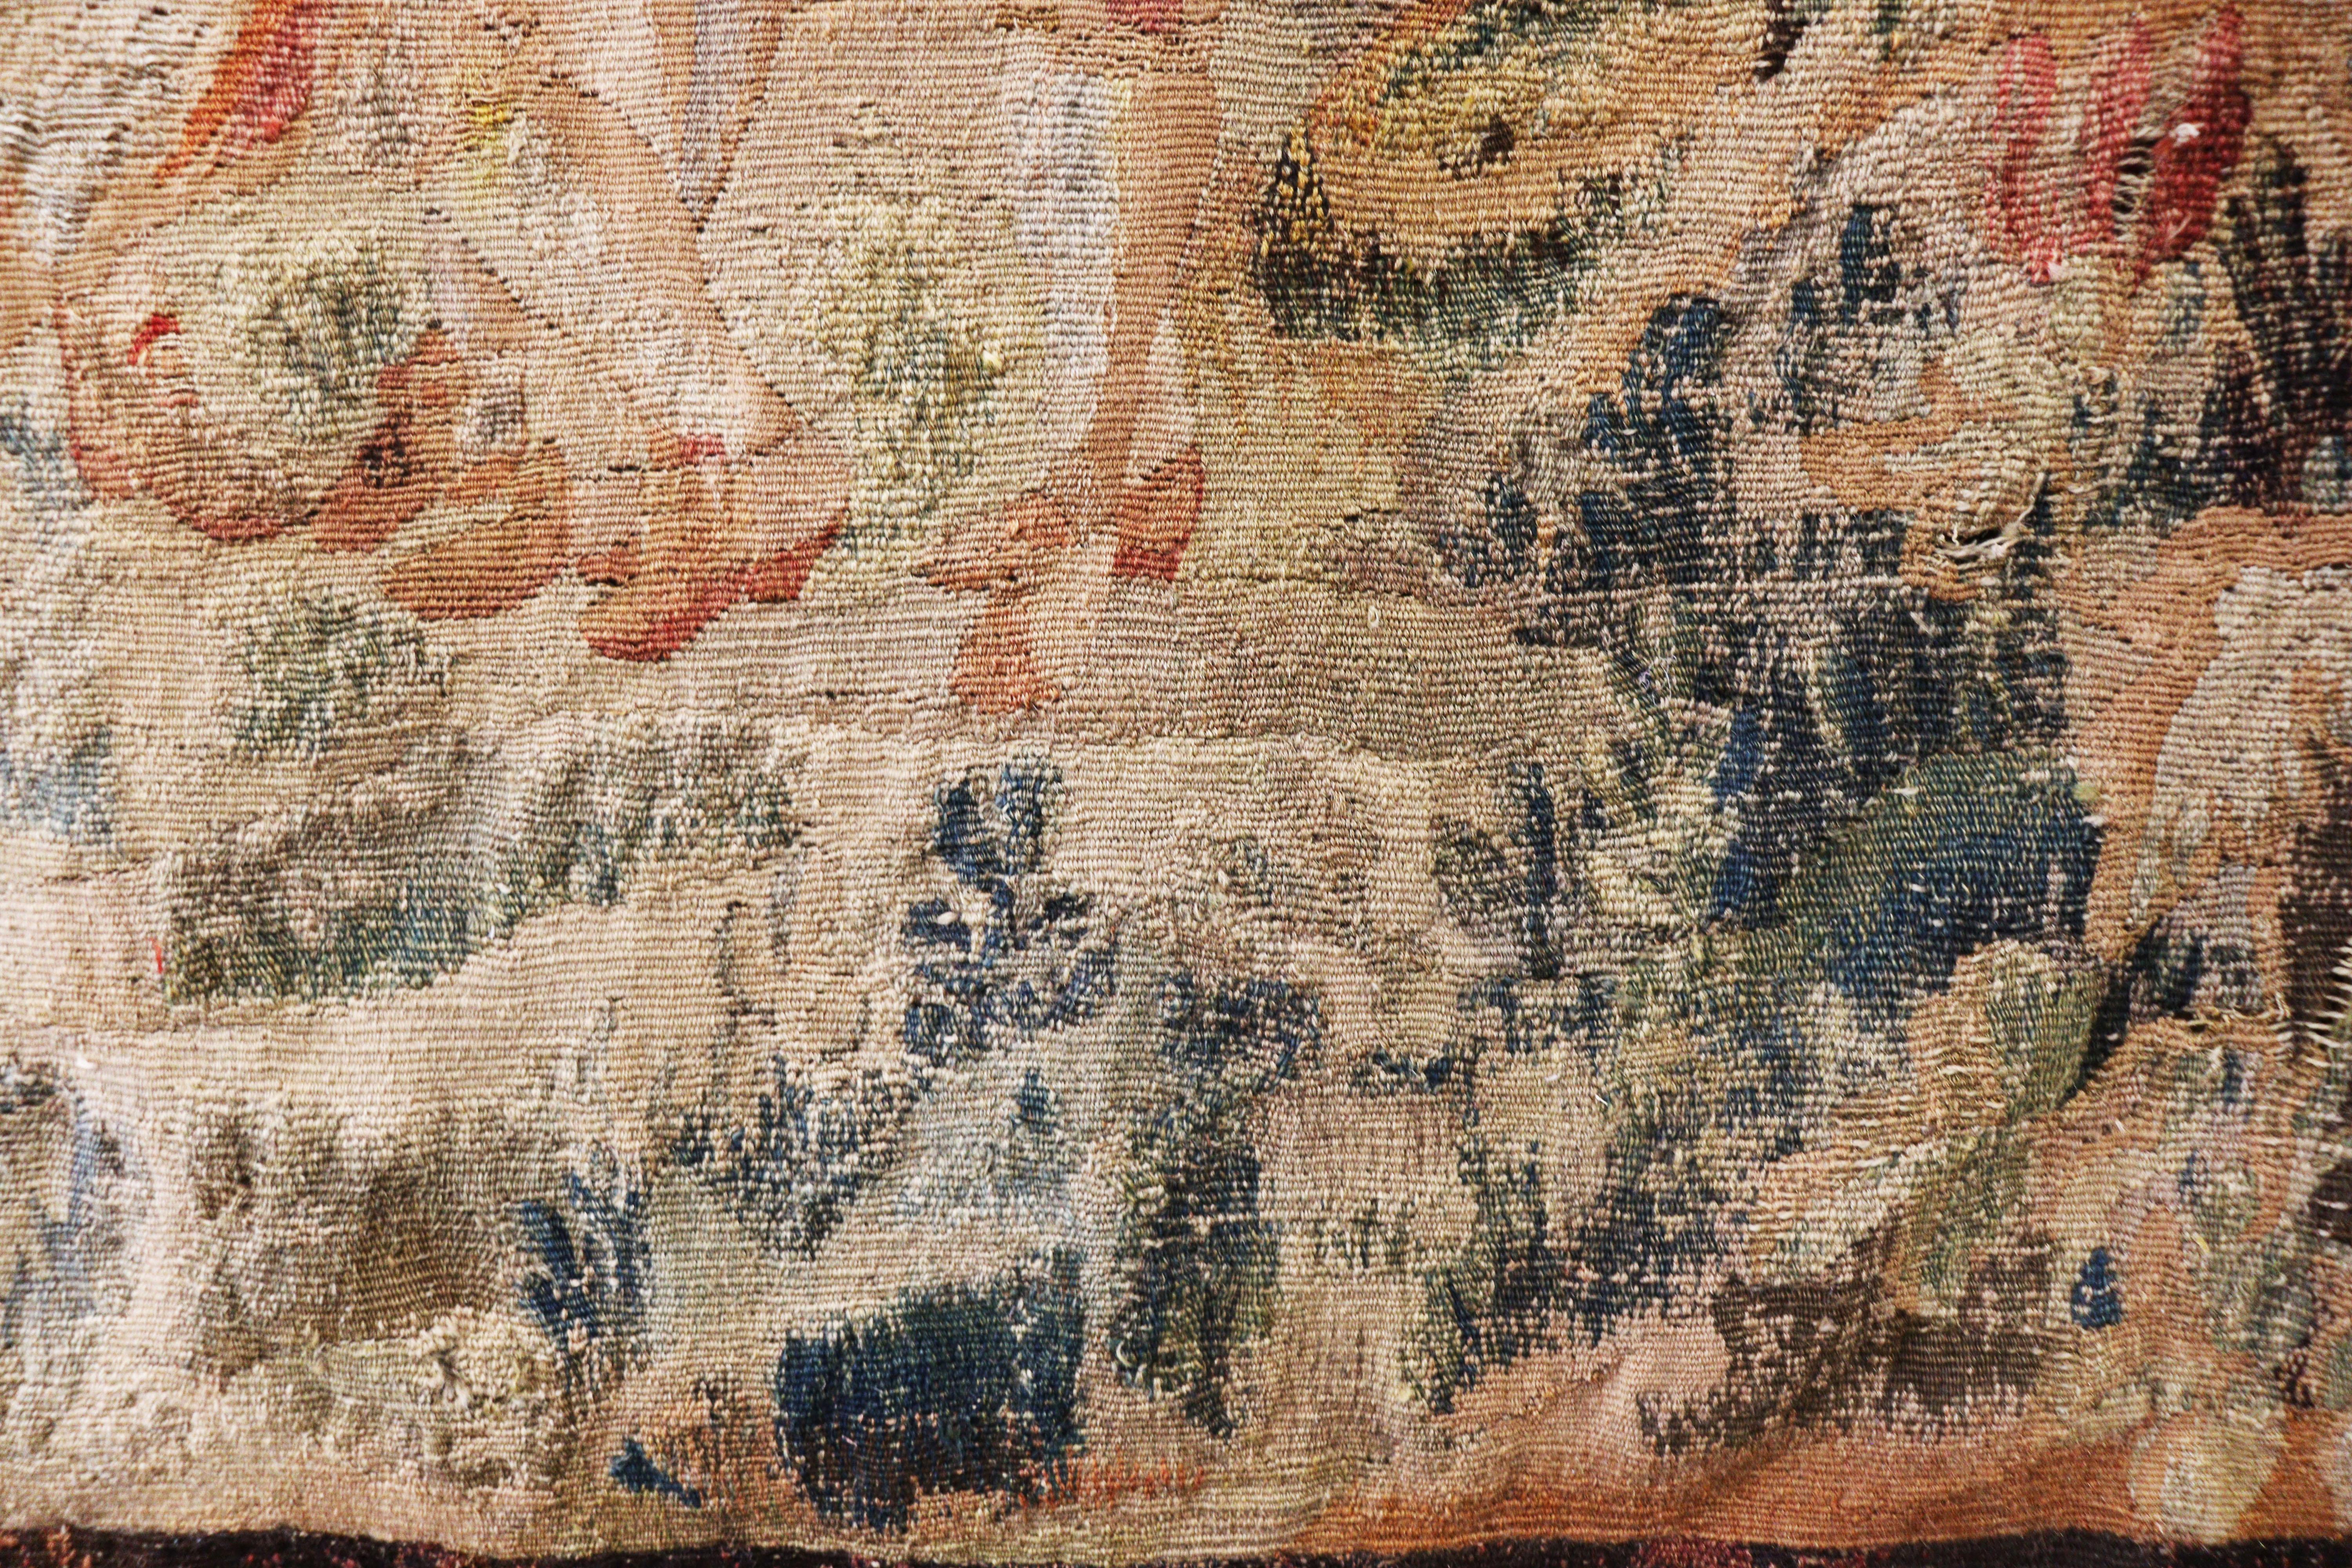 Une tapisserie fine et rectangulaire tissée dans des tons havane et rouille avec du vert. Au centre se trouve un paysage forestier.
Fabriqué en laine et en soie.